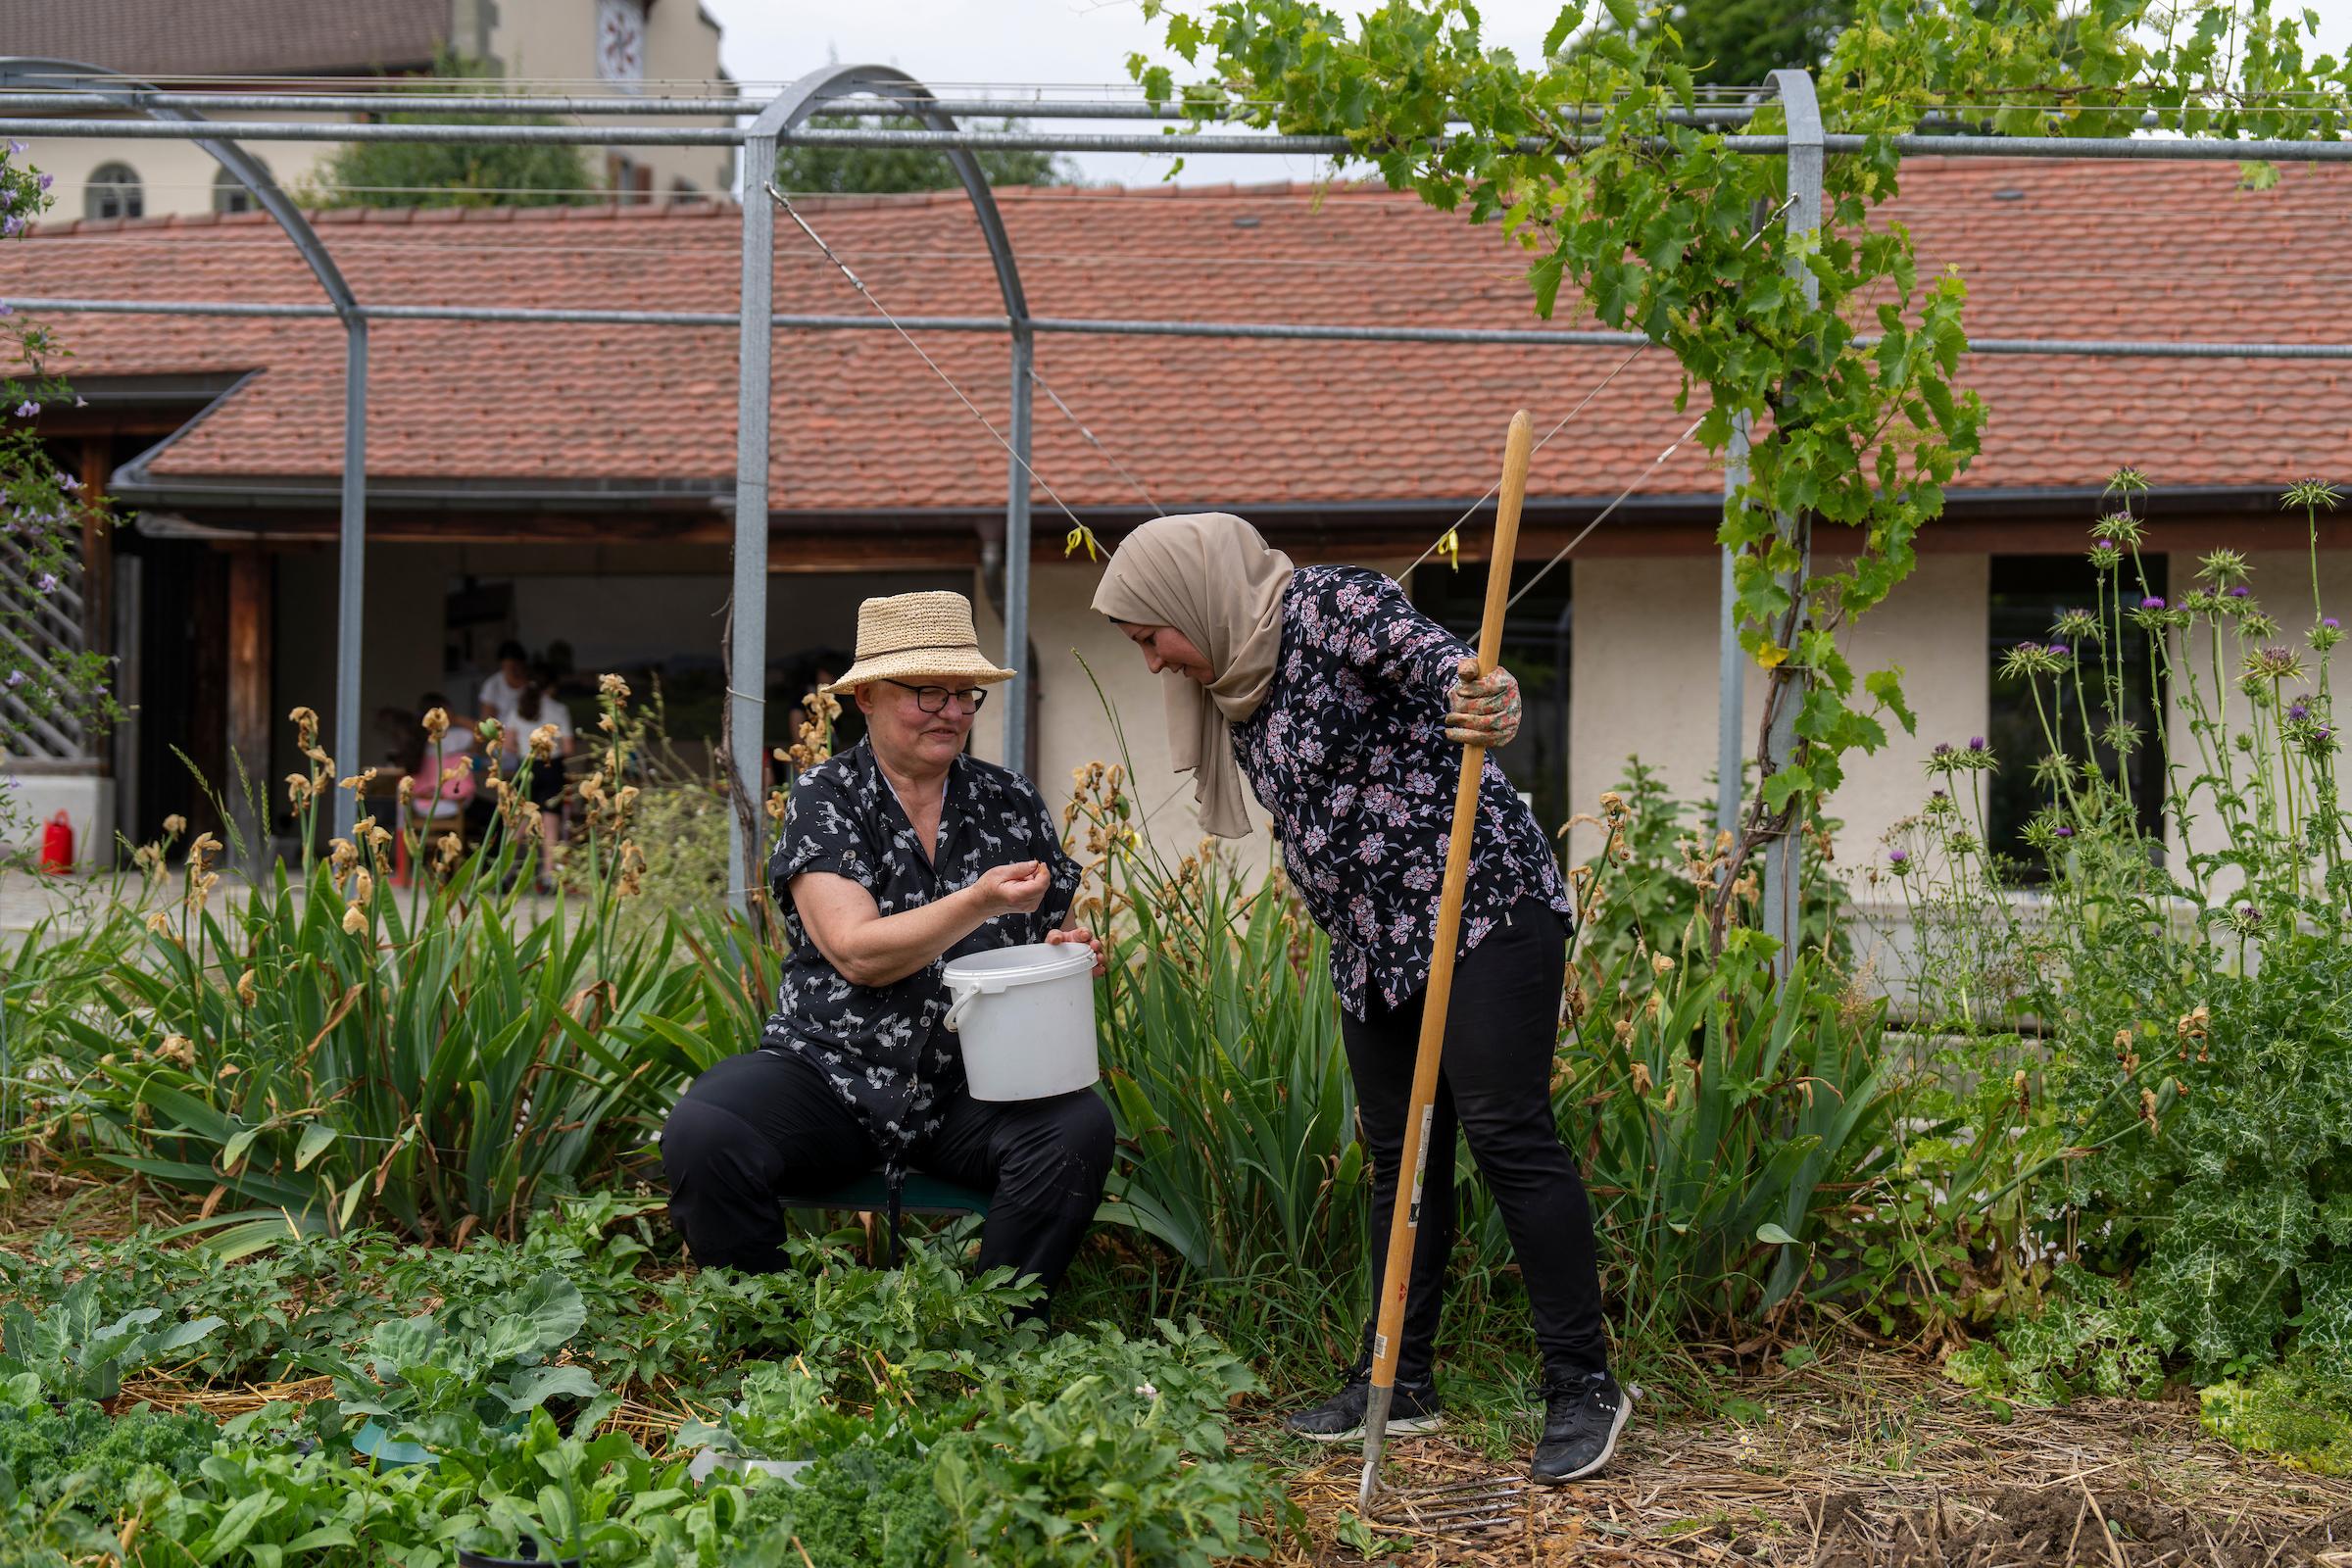 Une femme avec un chapeau et des lunettes montre à une autre femme, qui porte un foulard, le résultat de sa récolte de petits pois. Elles sont entourées de verdure, dans le jardin communautaire de la Croix-Rouge fribourgeoise à Bulle.